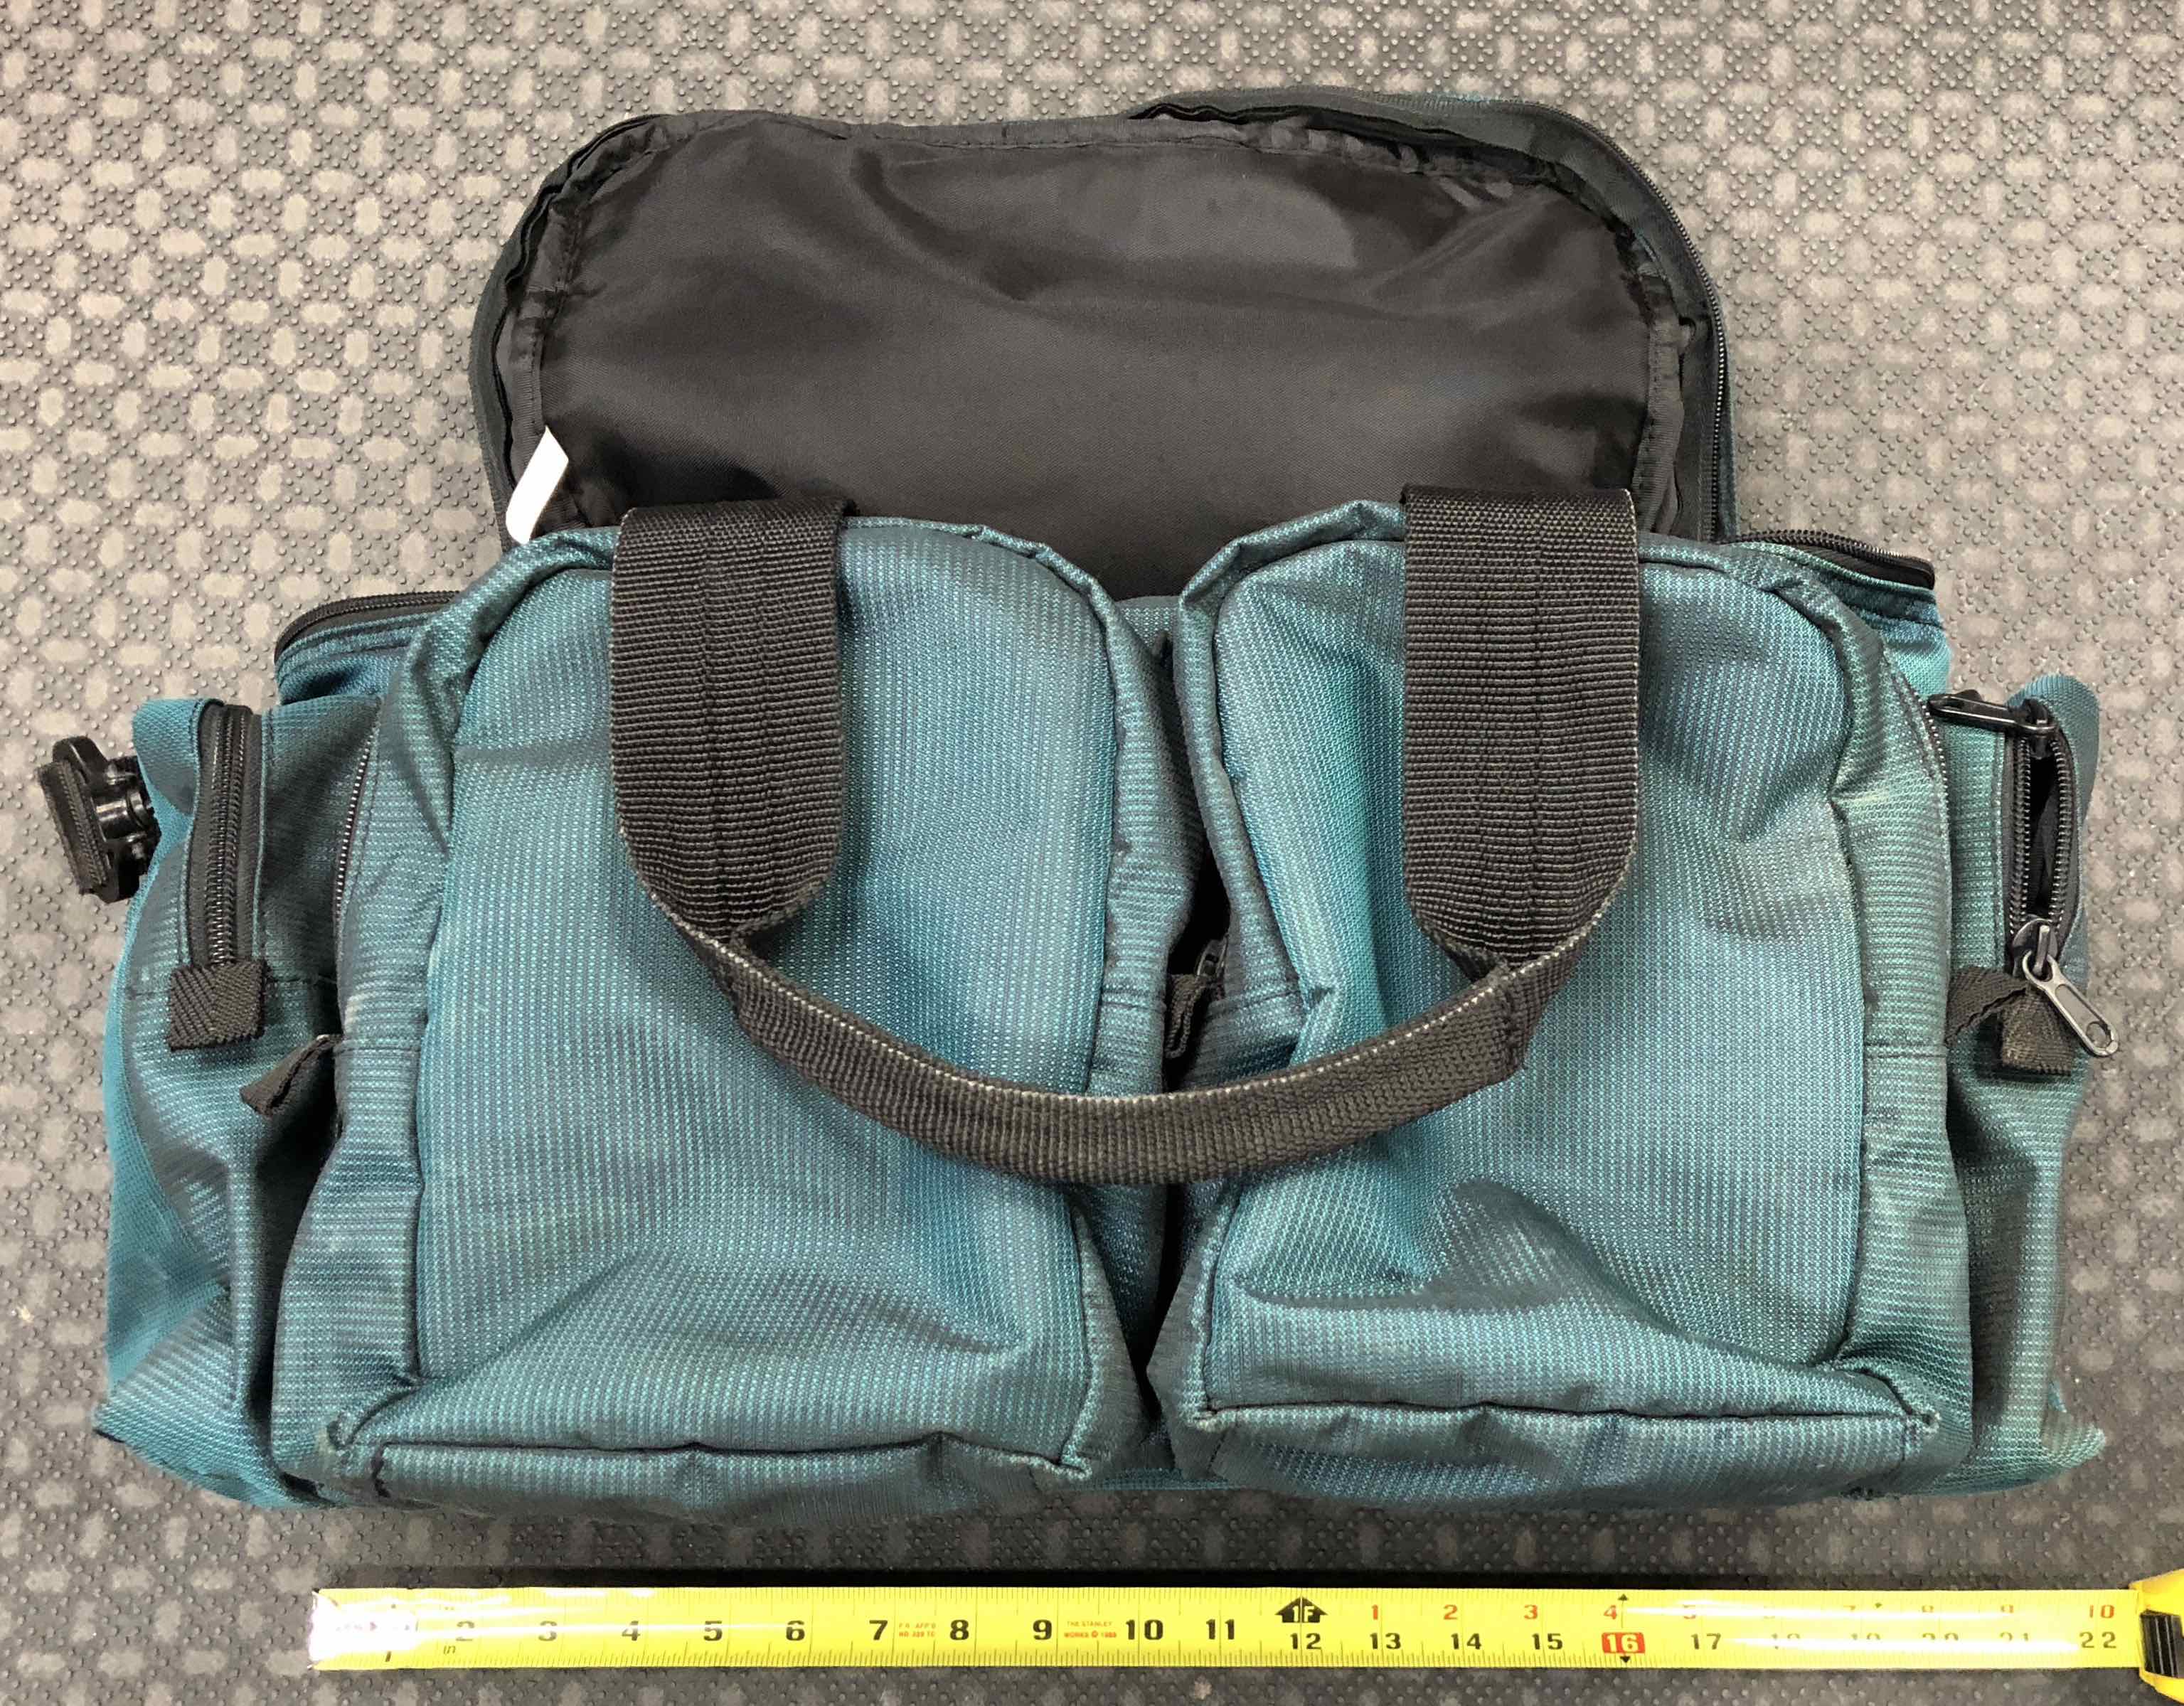 Orvis Soft Side Tackle Reel Bag - GREAT SHAPE! - $50